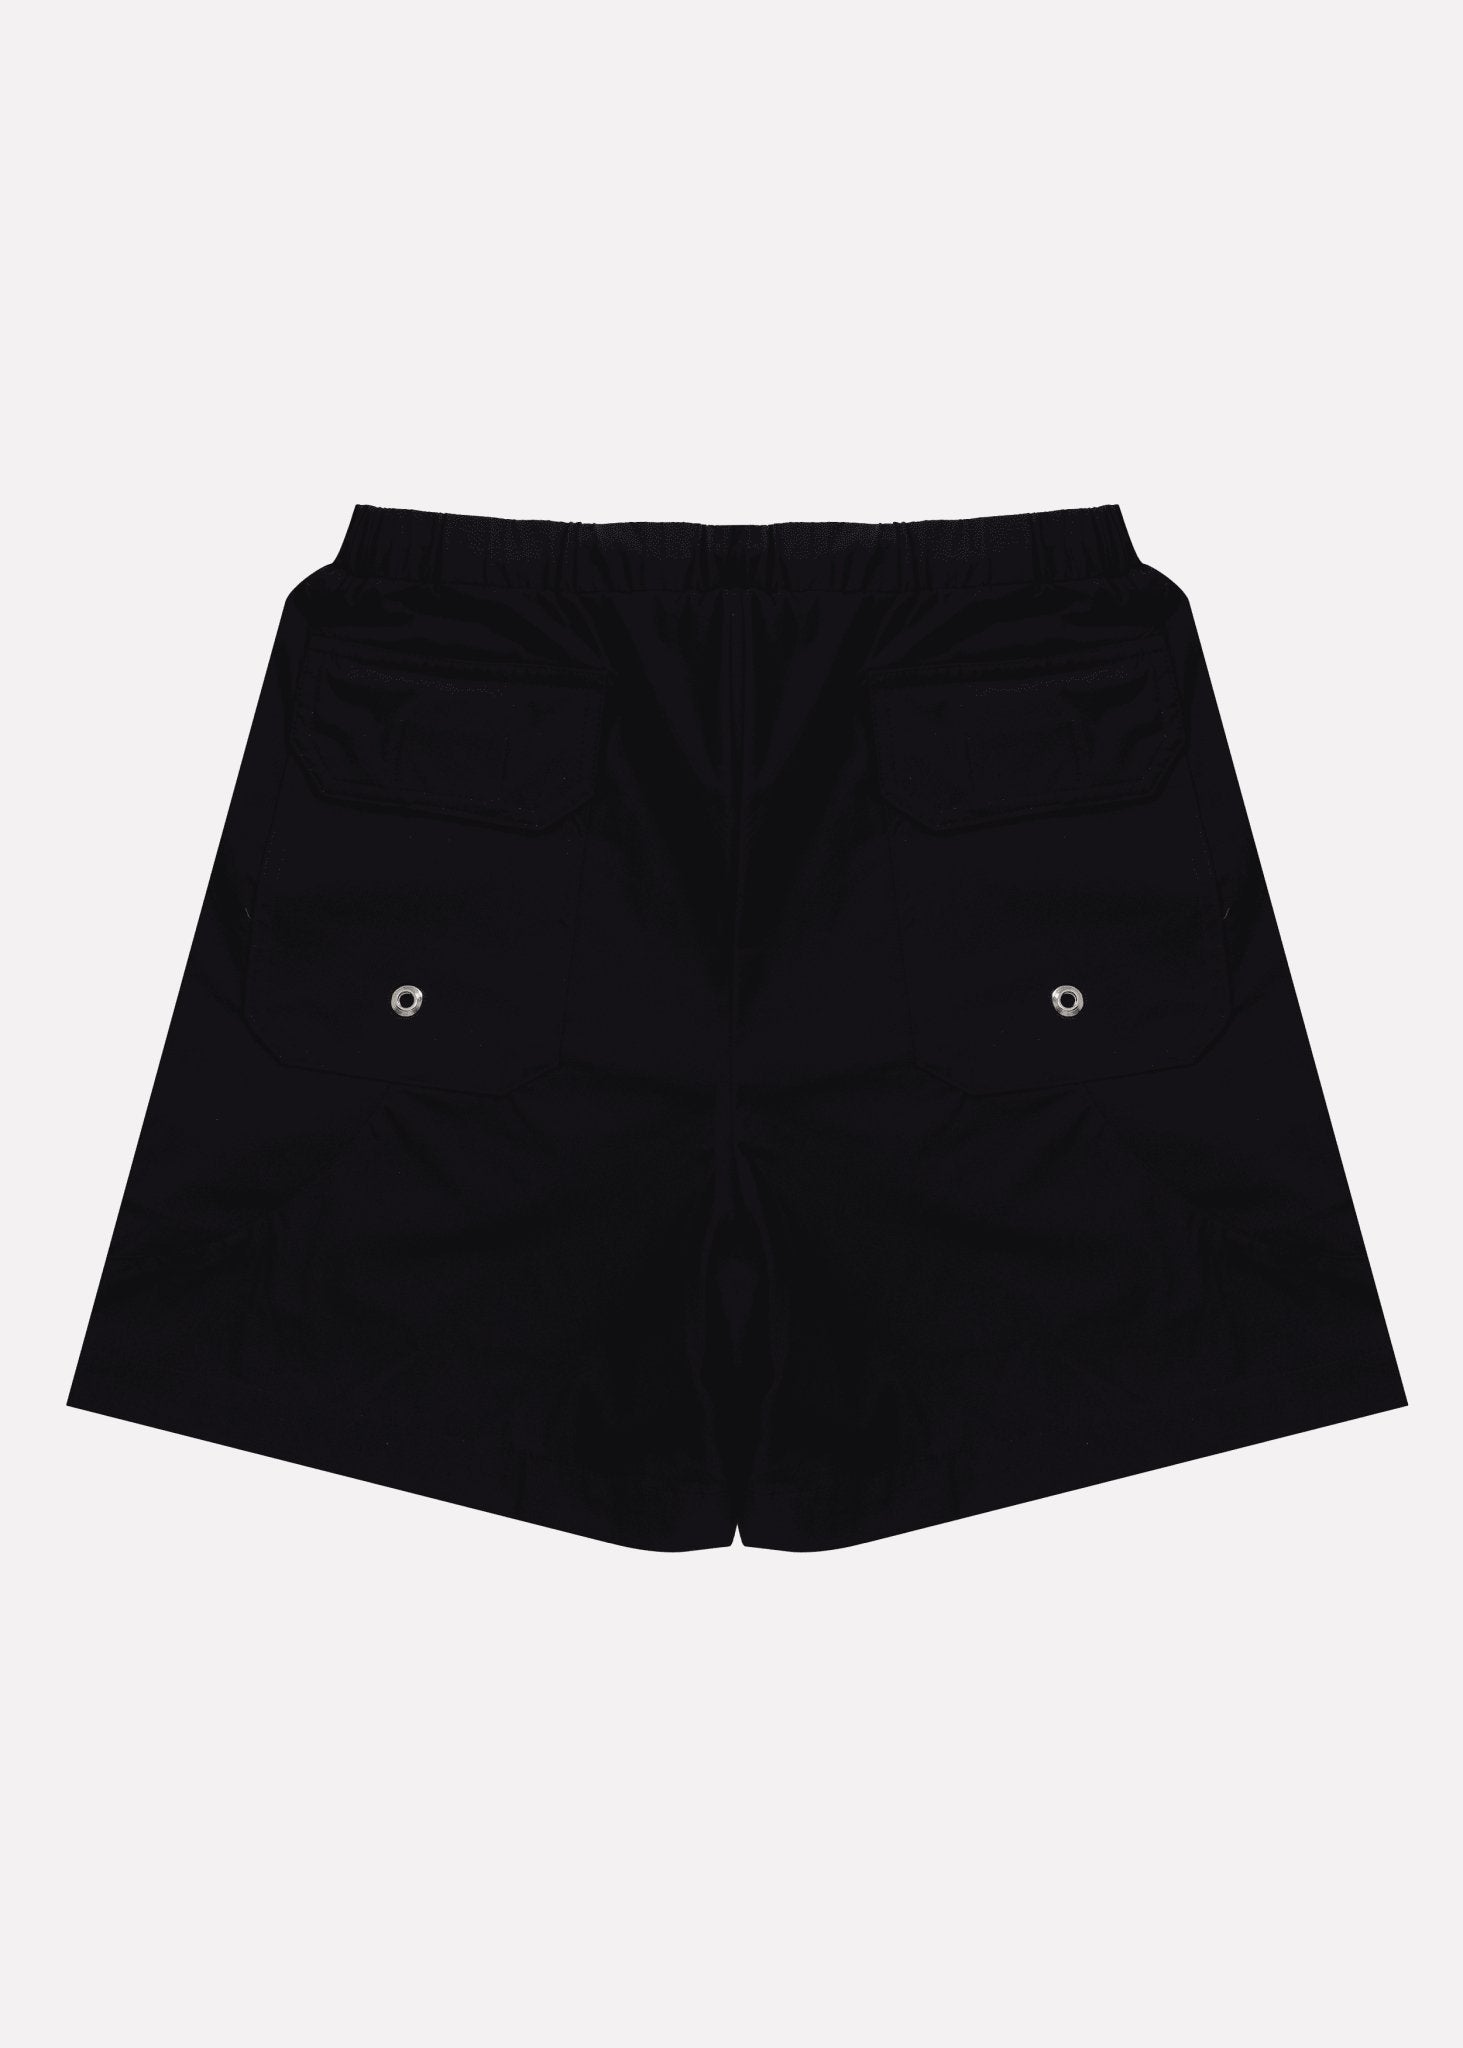 X-Shorts Poliamida